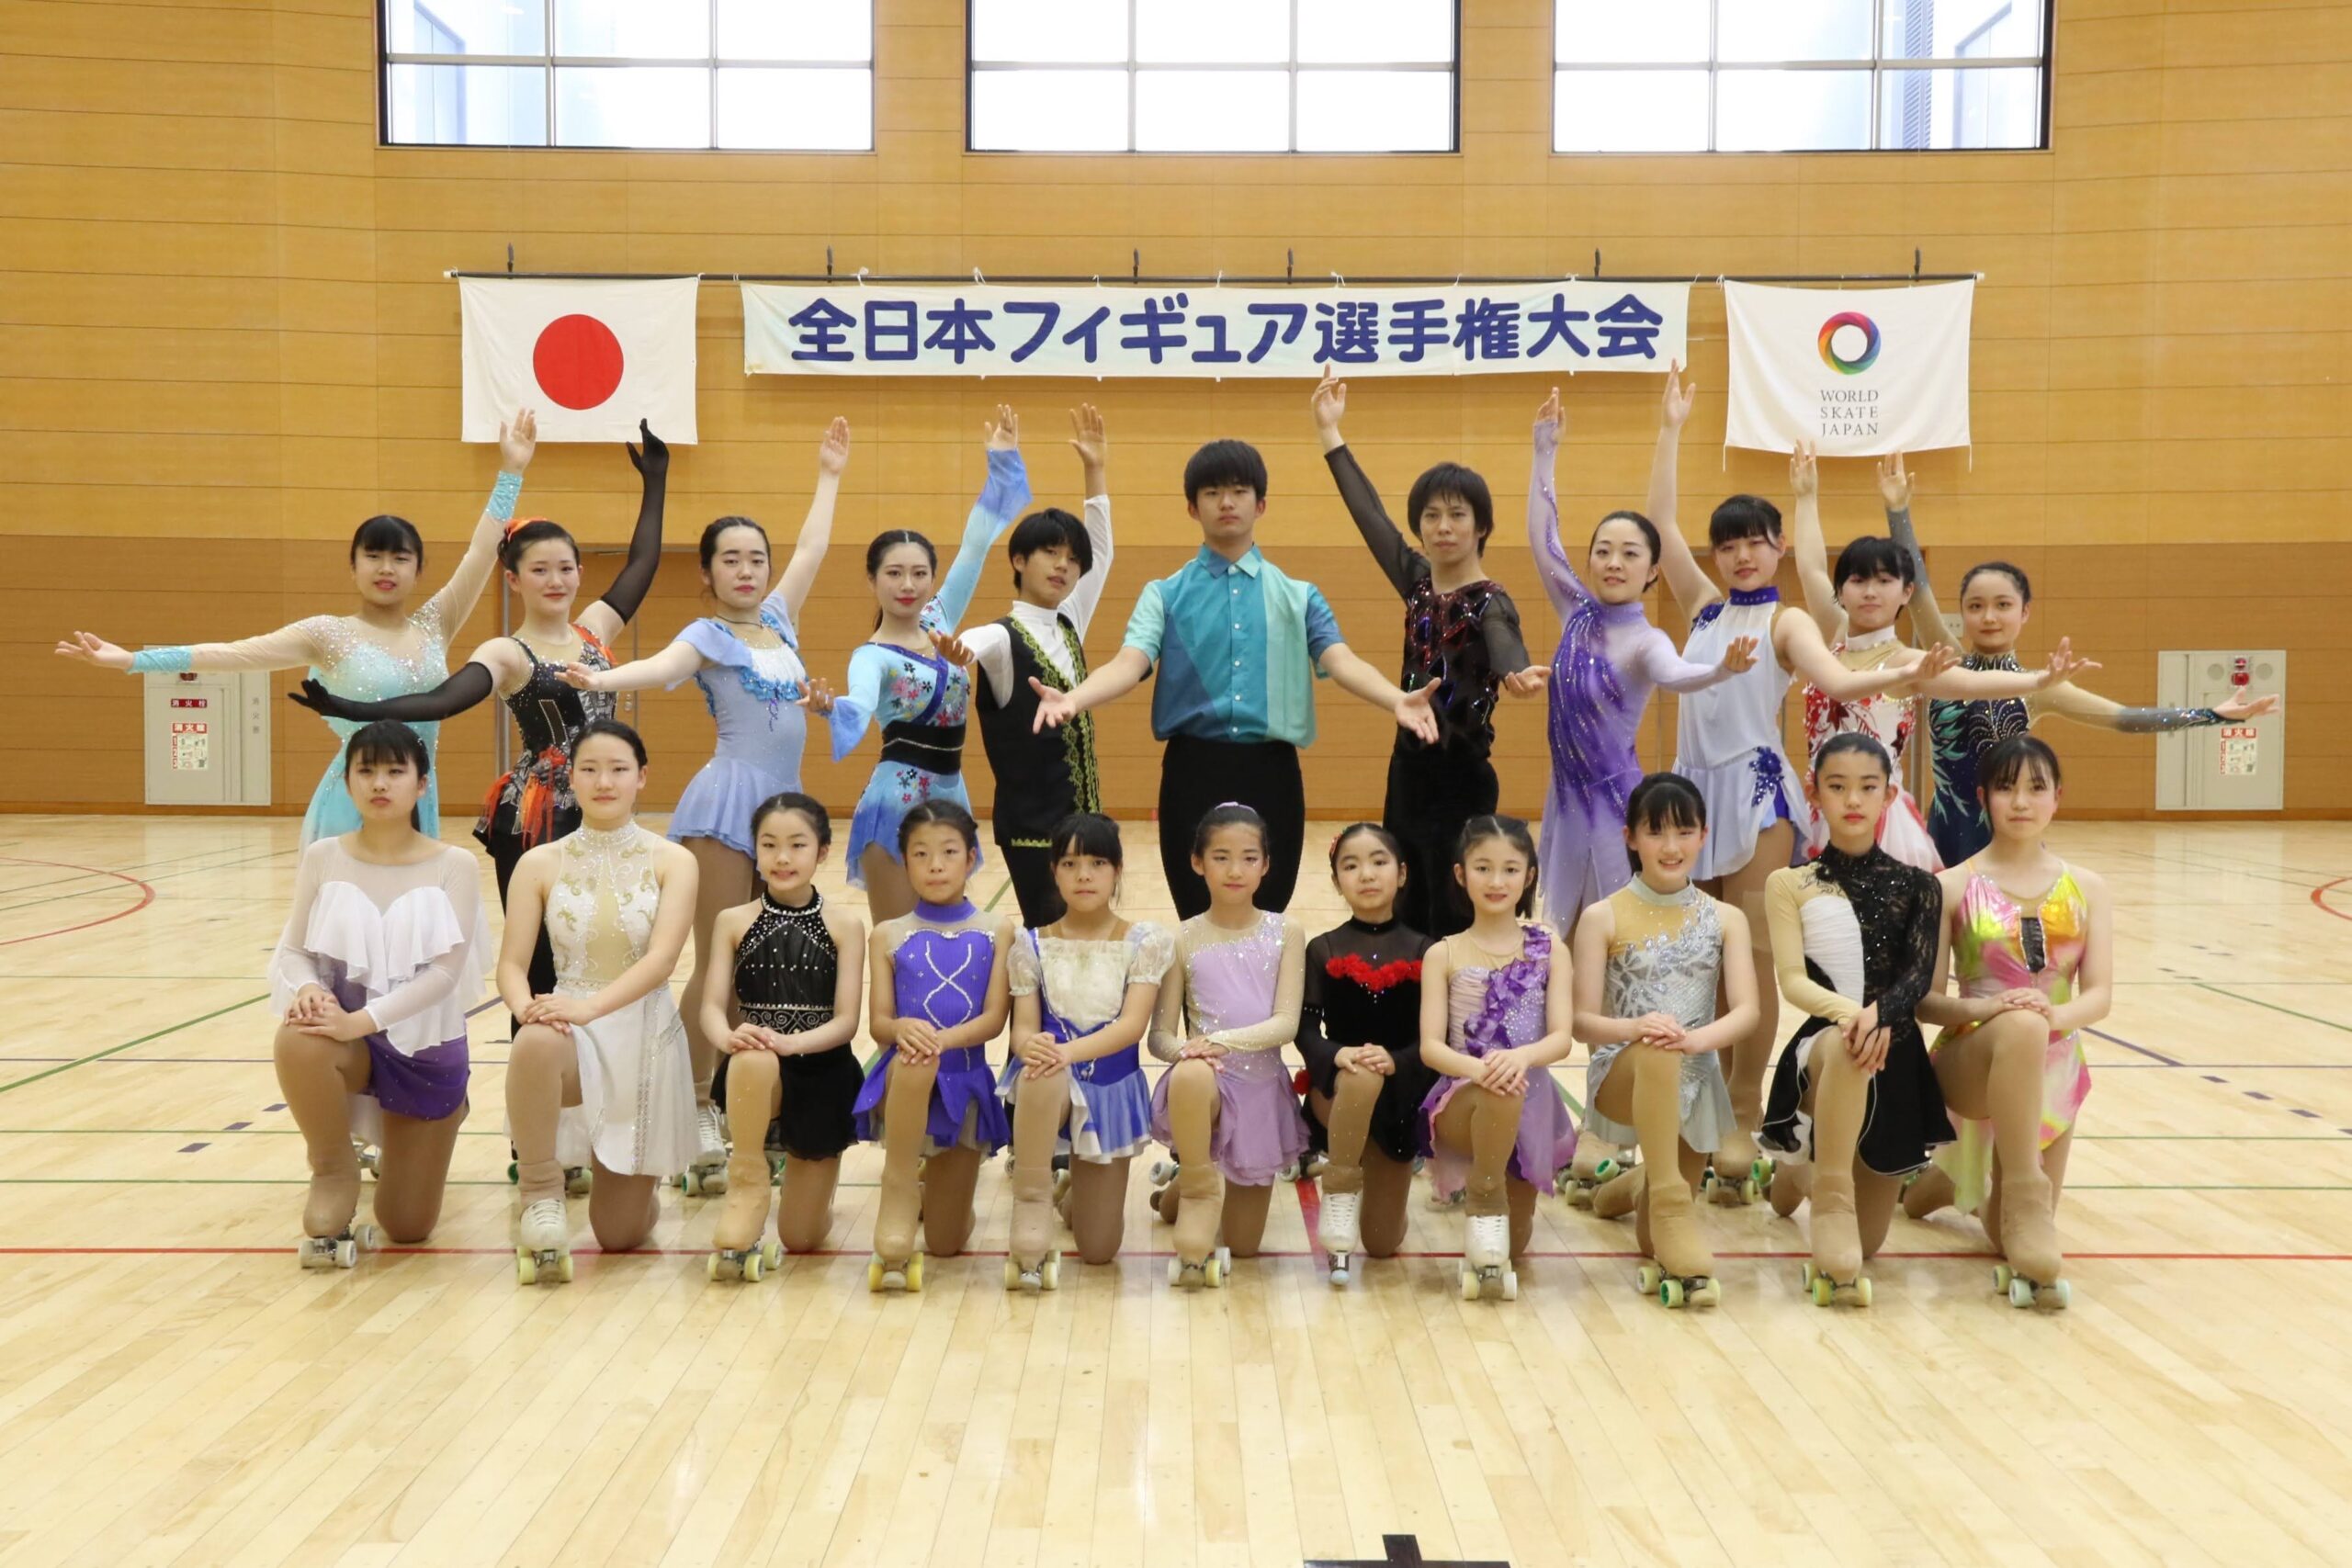 第７１回全日本ローラースケートフィギュア選手権大会が開催されました。